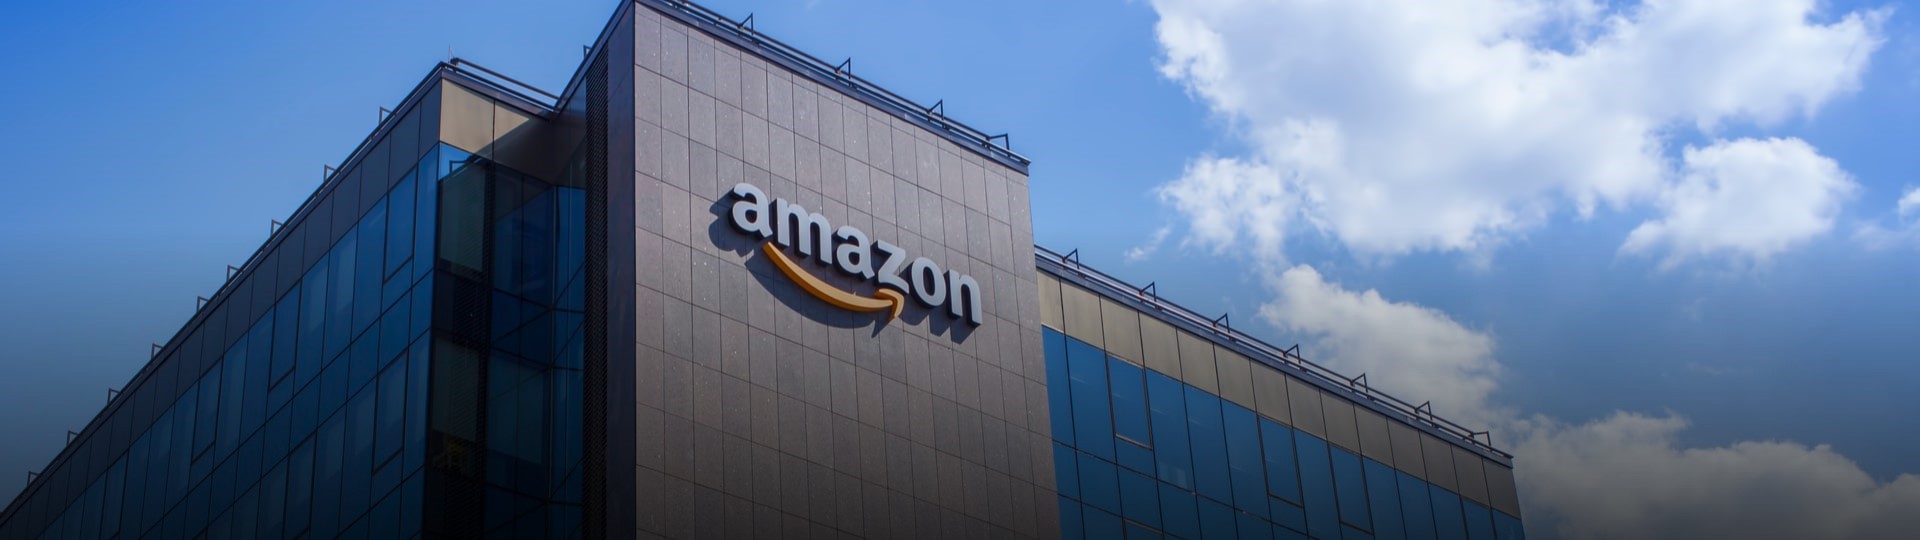 Amazon dostal v EU pokutu 746 milionů eur za slabou ochranu osobních údajů